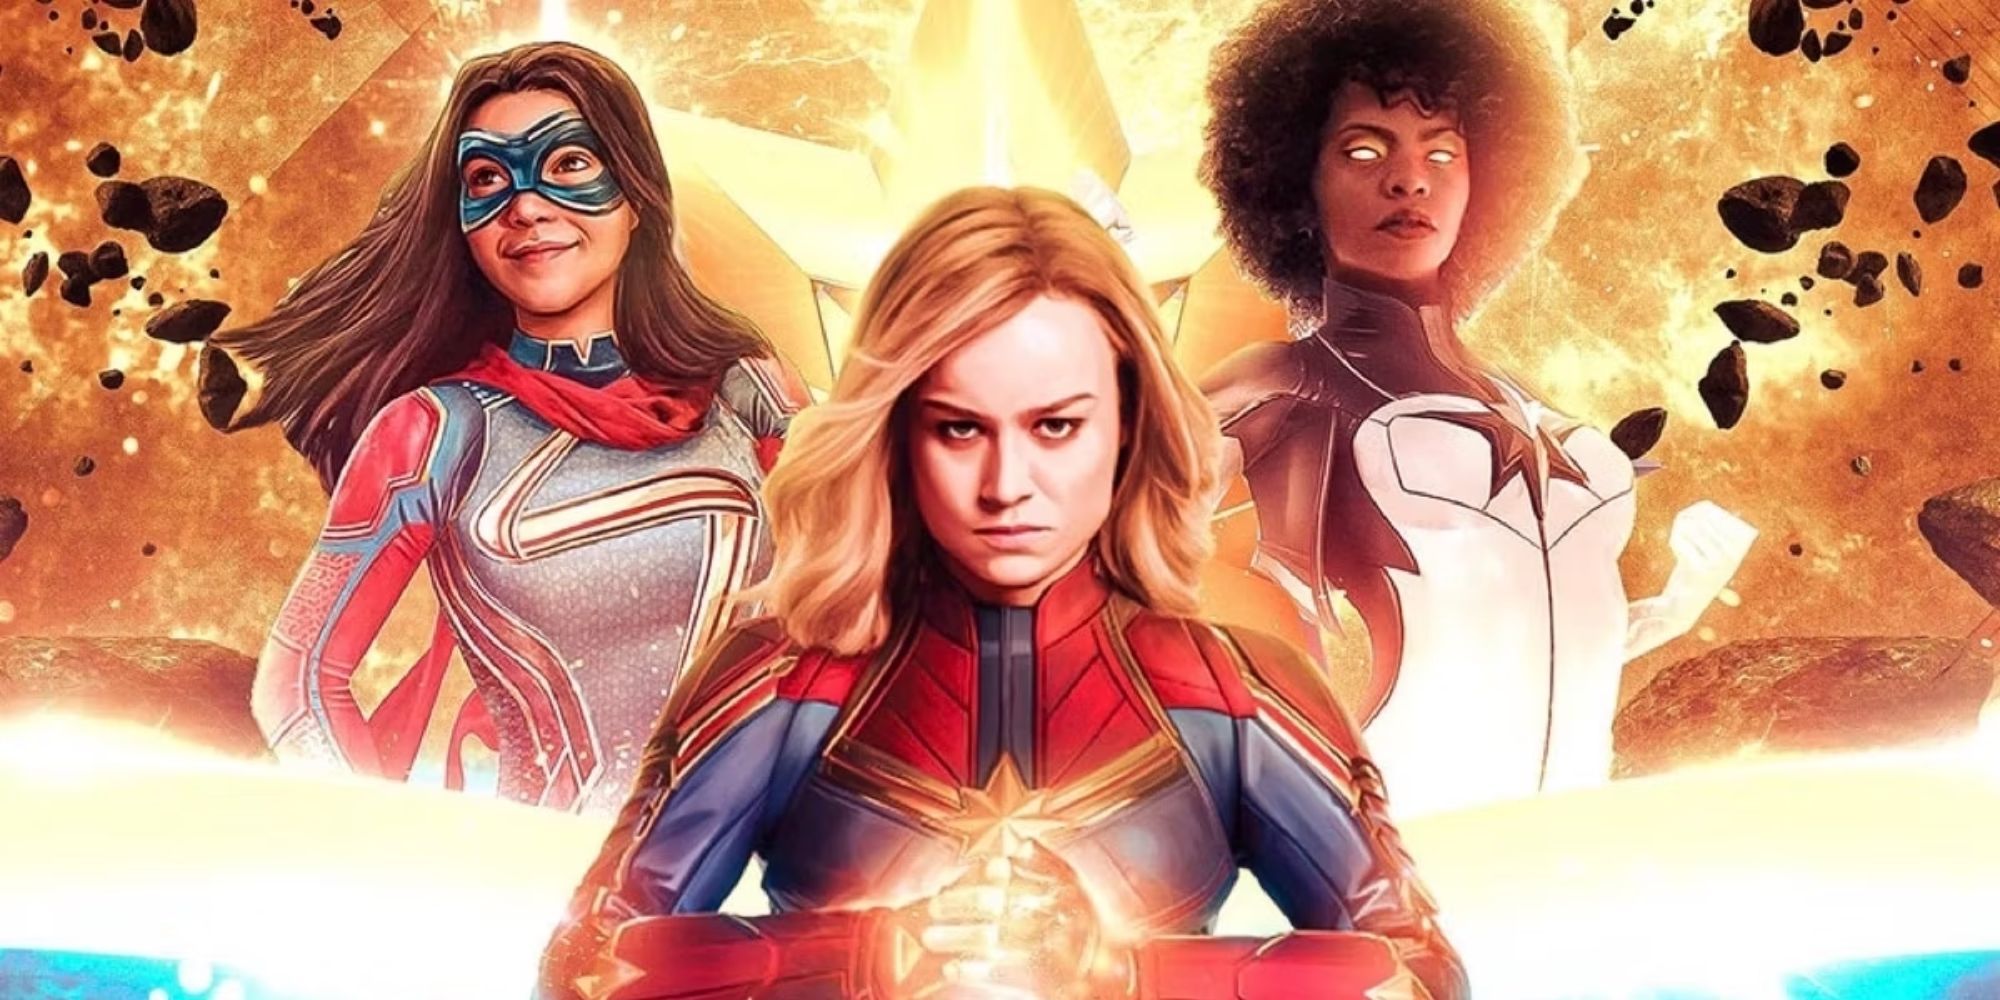 Three female superheroes